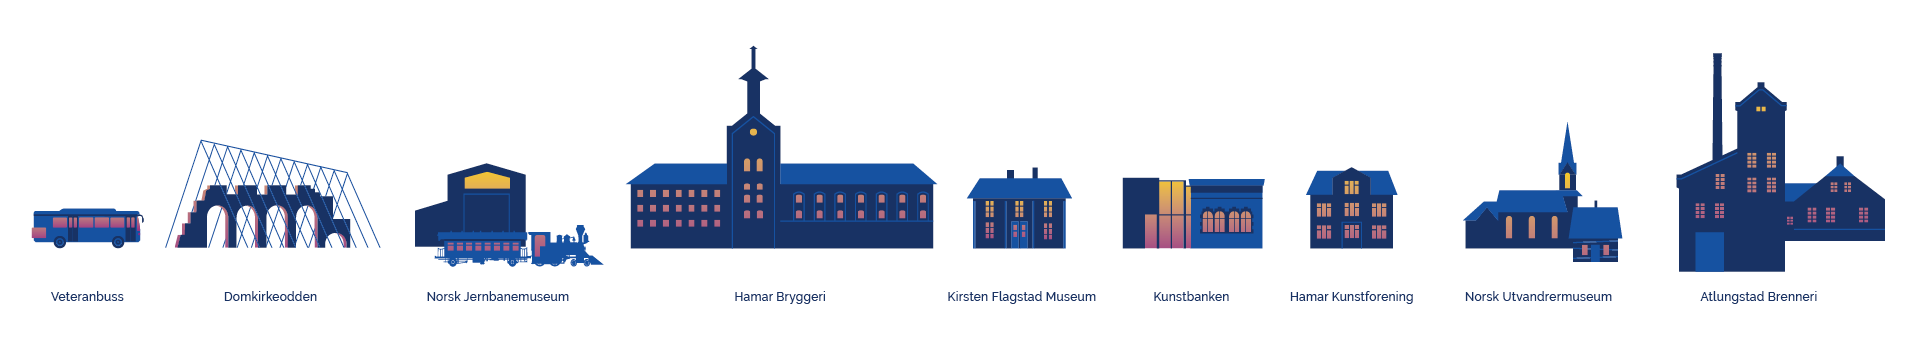 Illustrasjoner for MuseumsNATT og deres visuelle profil, laget av Haus byrå